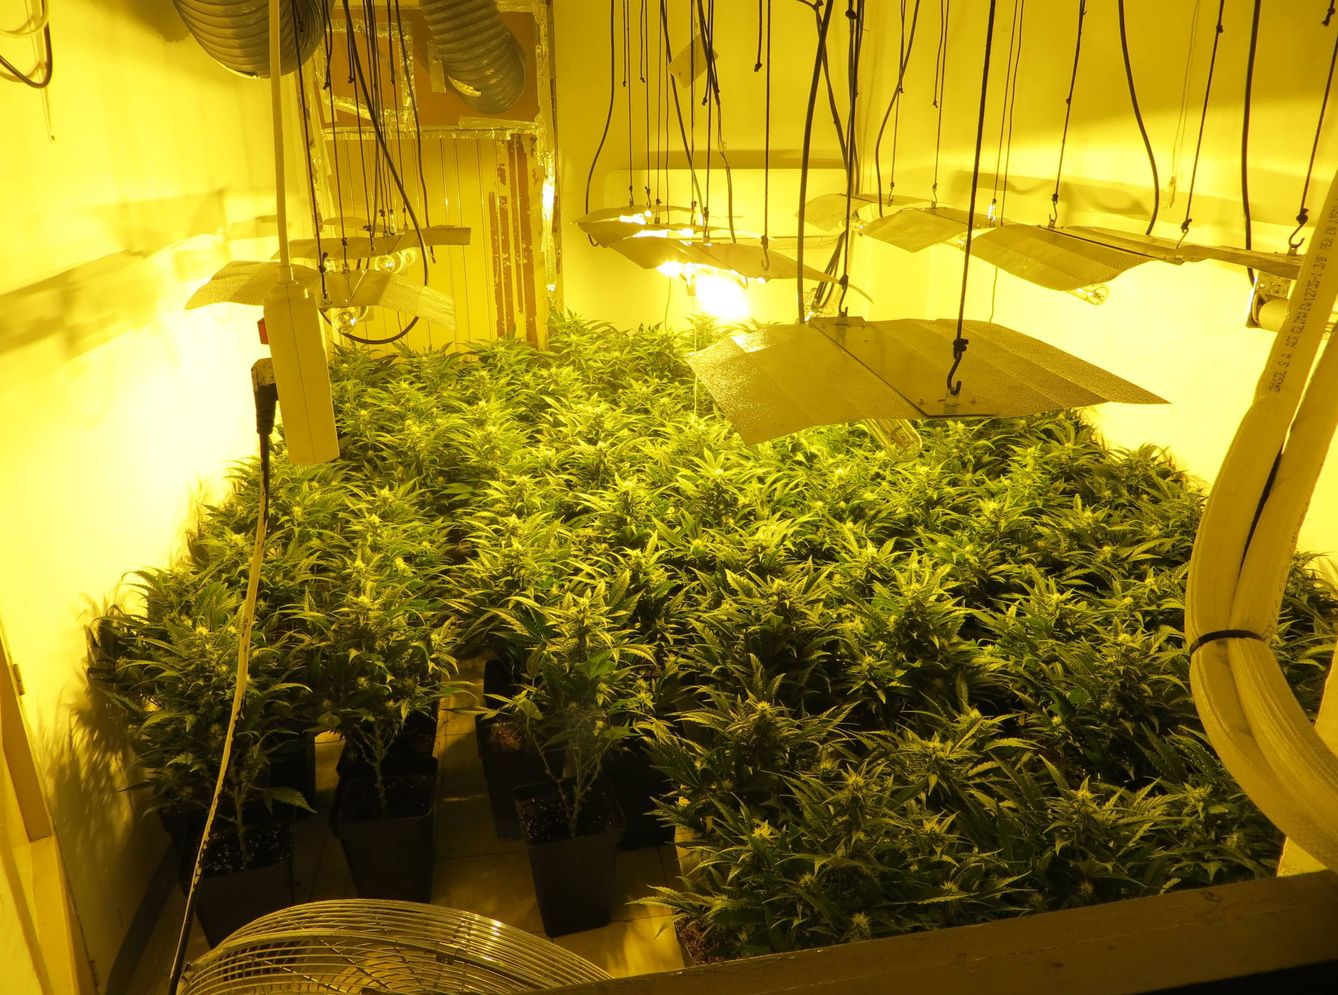 Una de las habitaciones llenas de plantas de marihuana encontrada durante el registro. (A. V.)